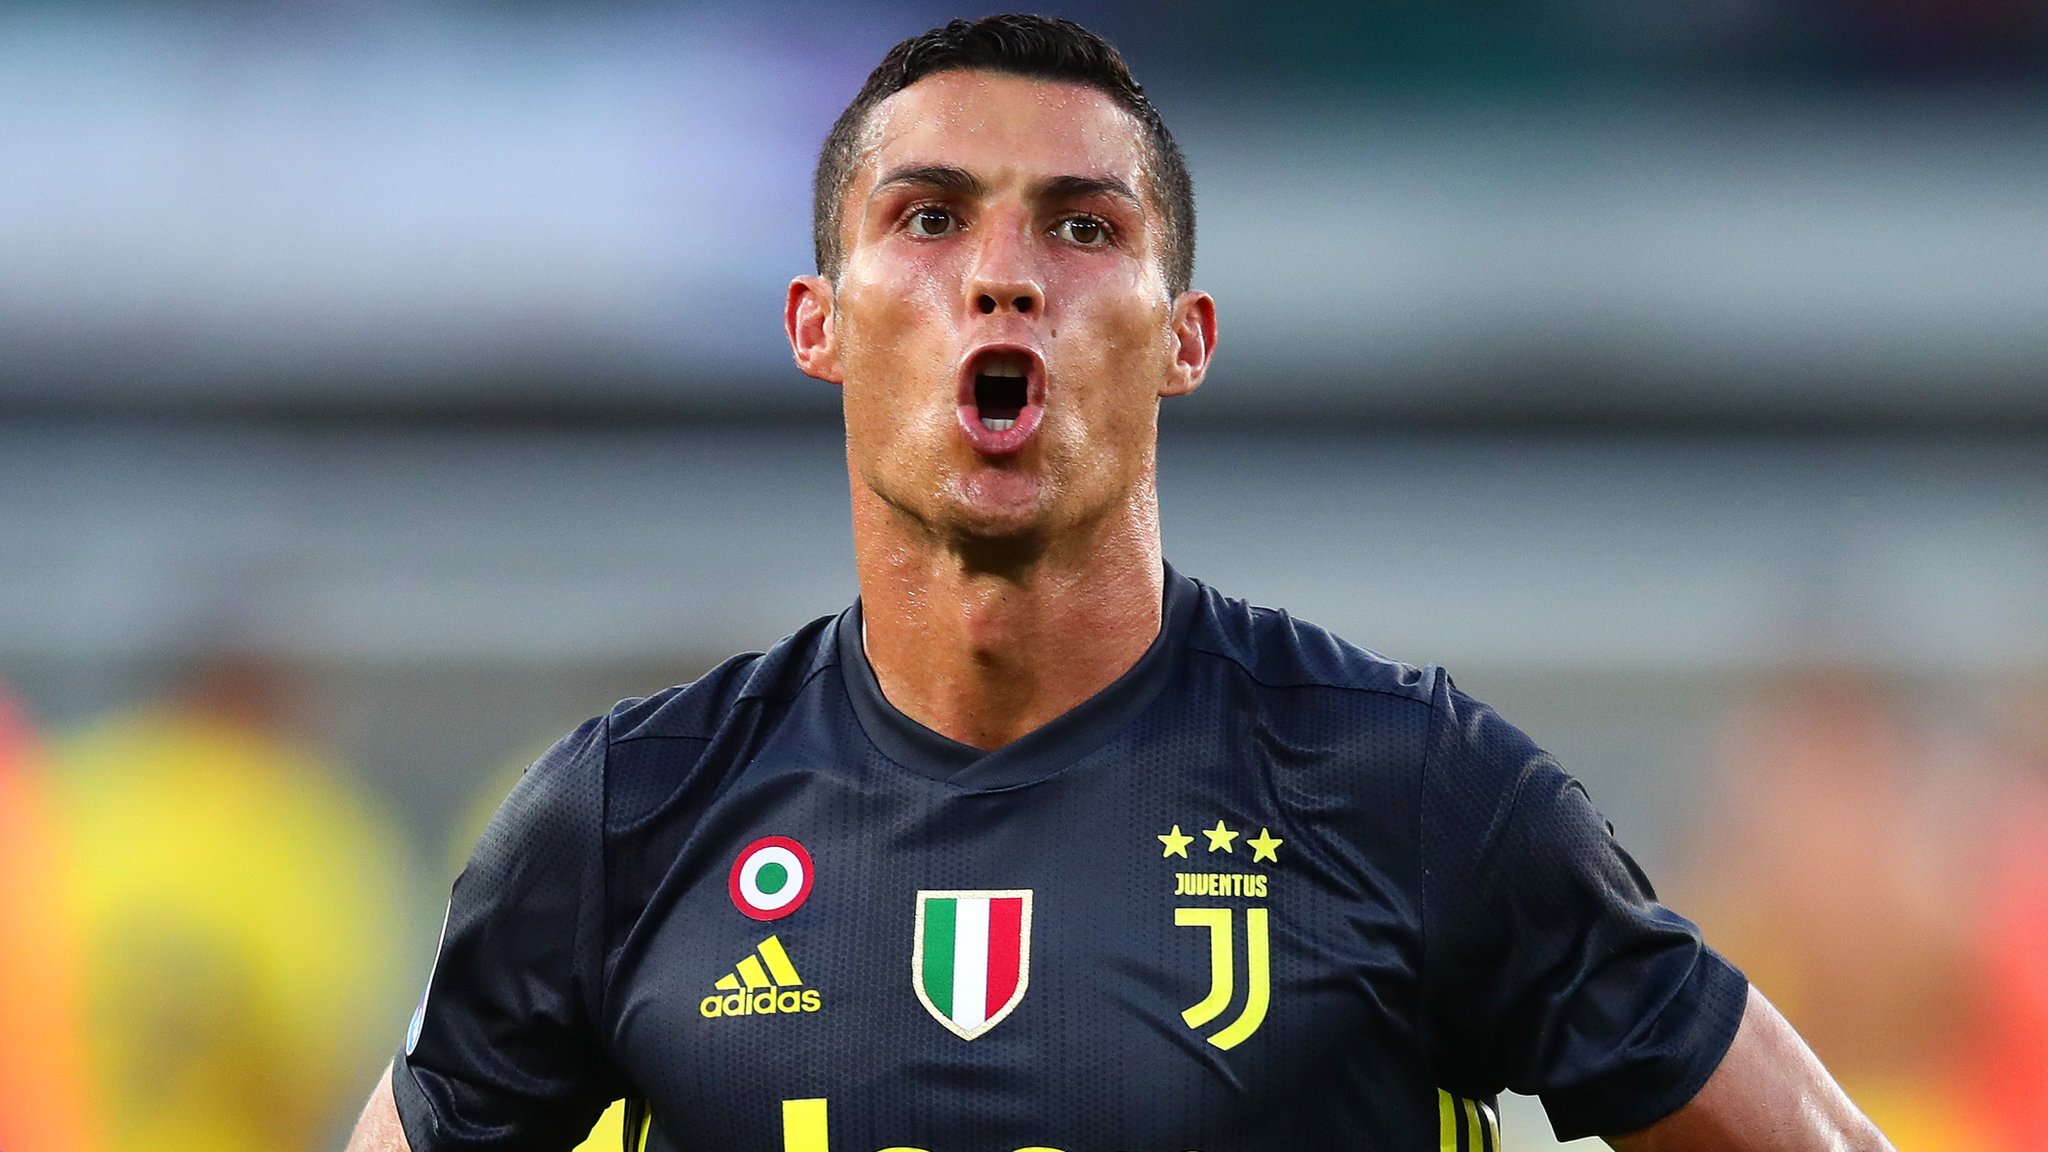 Ronaldo makes winning start in dramatic Juventus debut